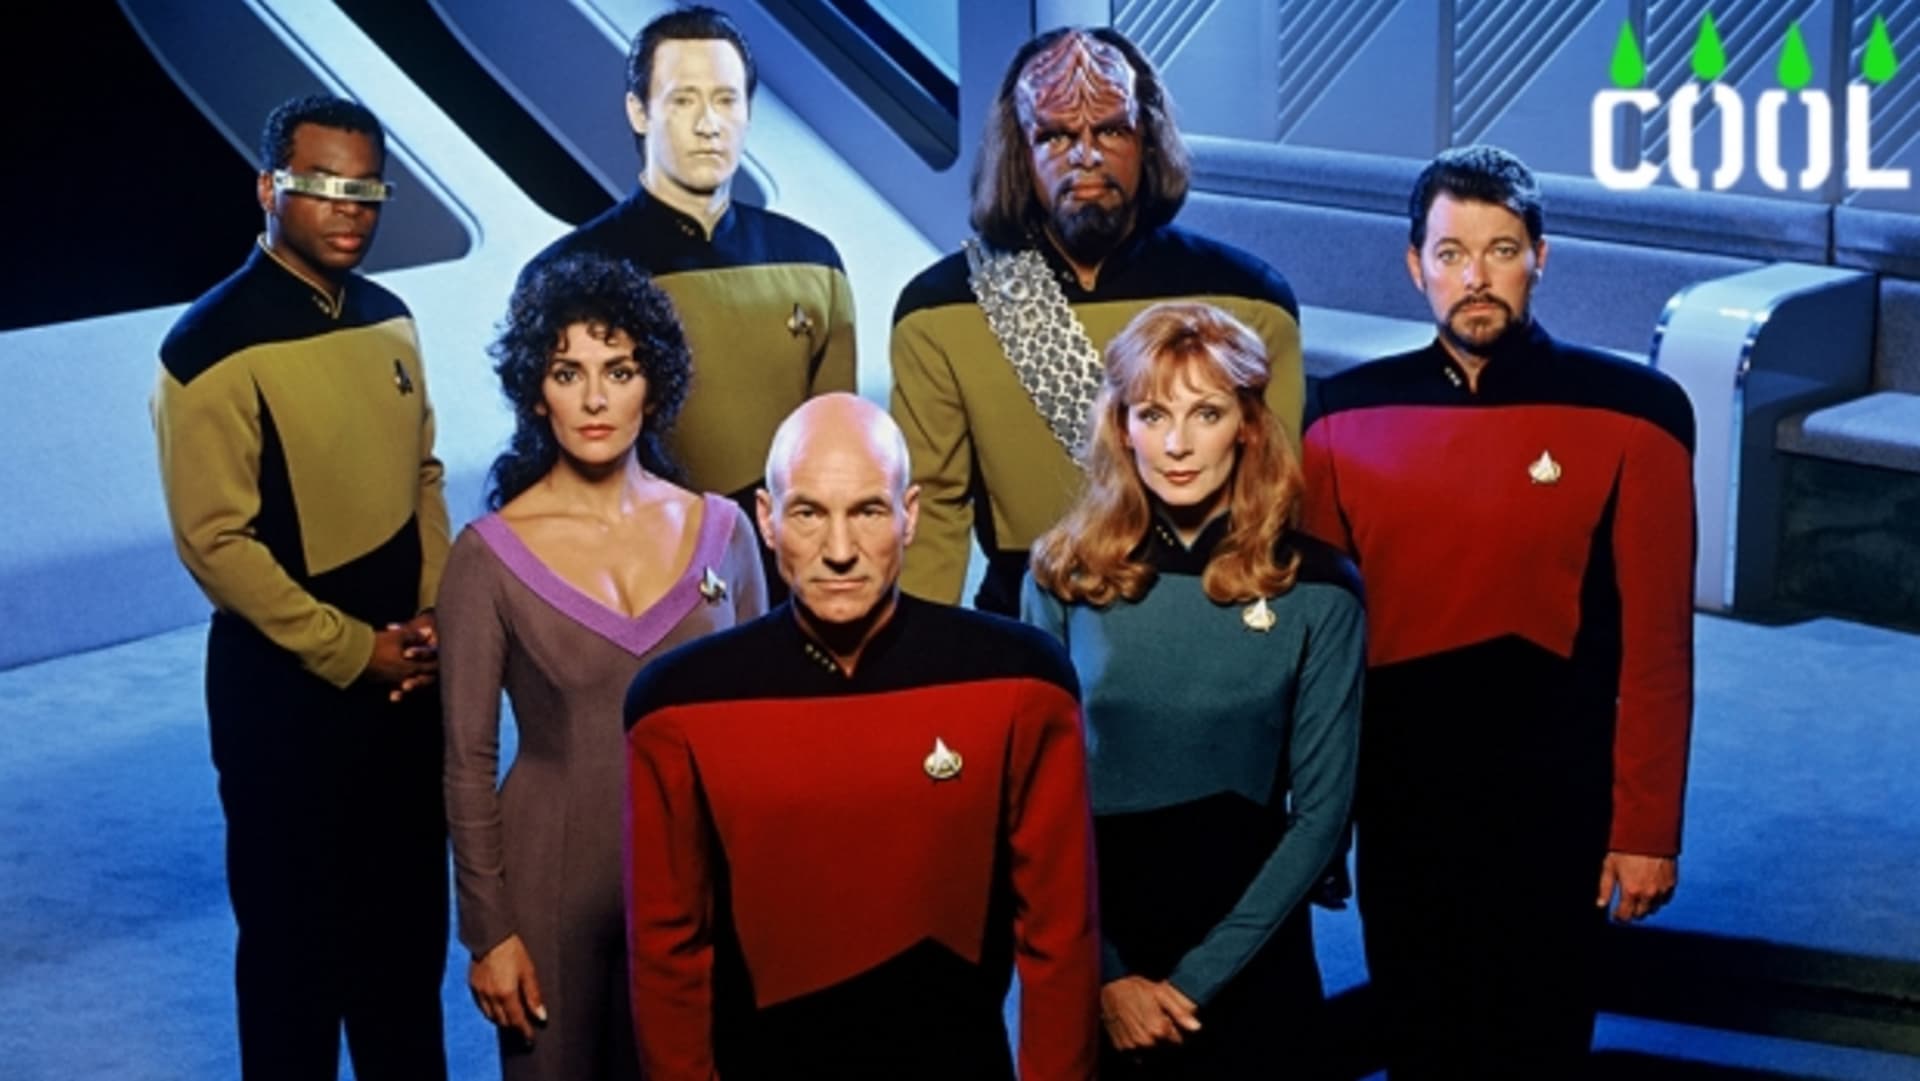 Star Trek - 4. narozeniny logo nahoře